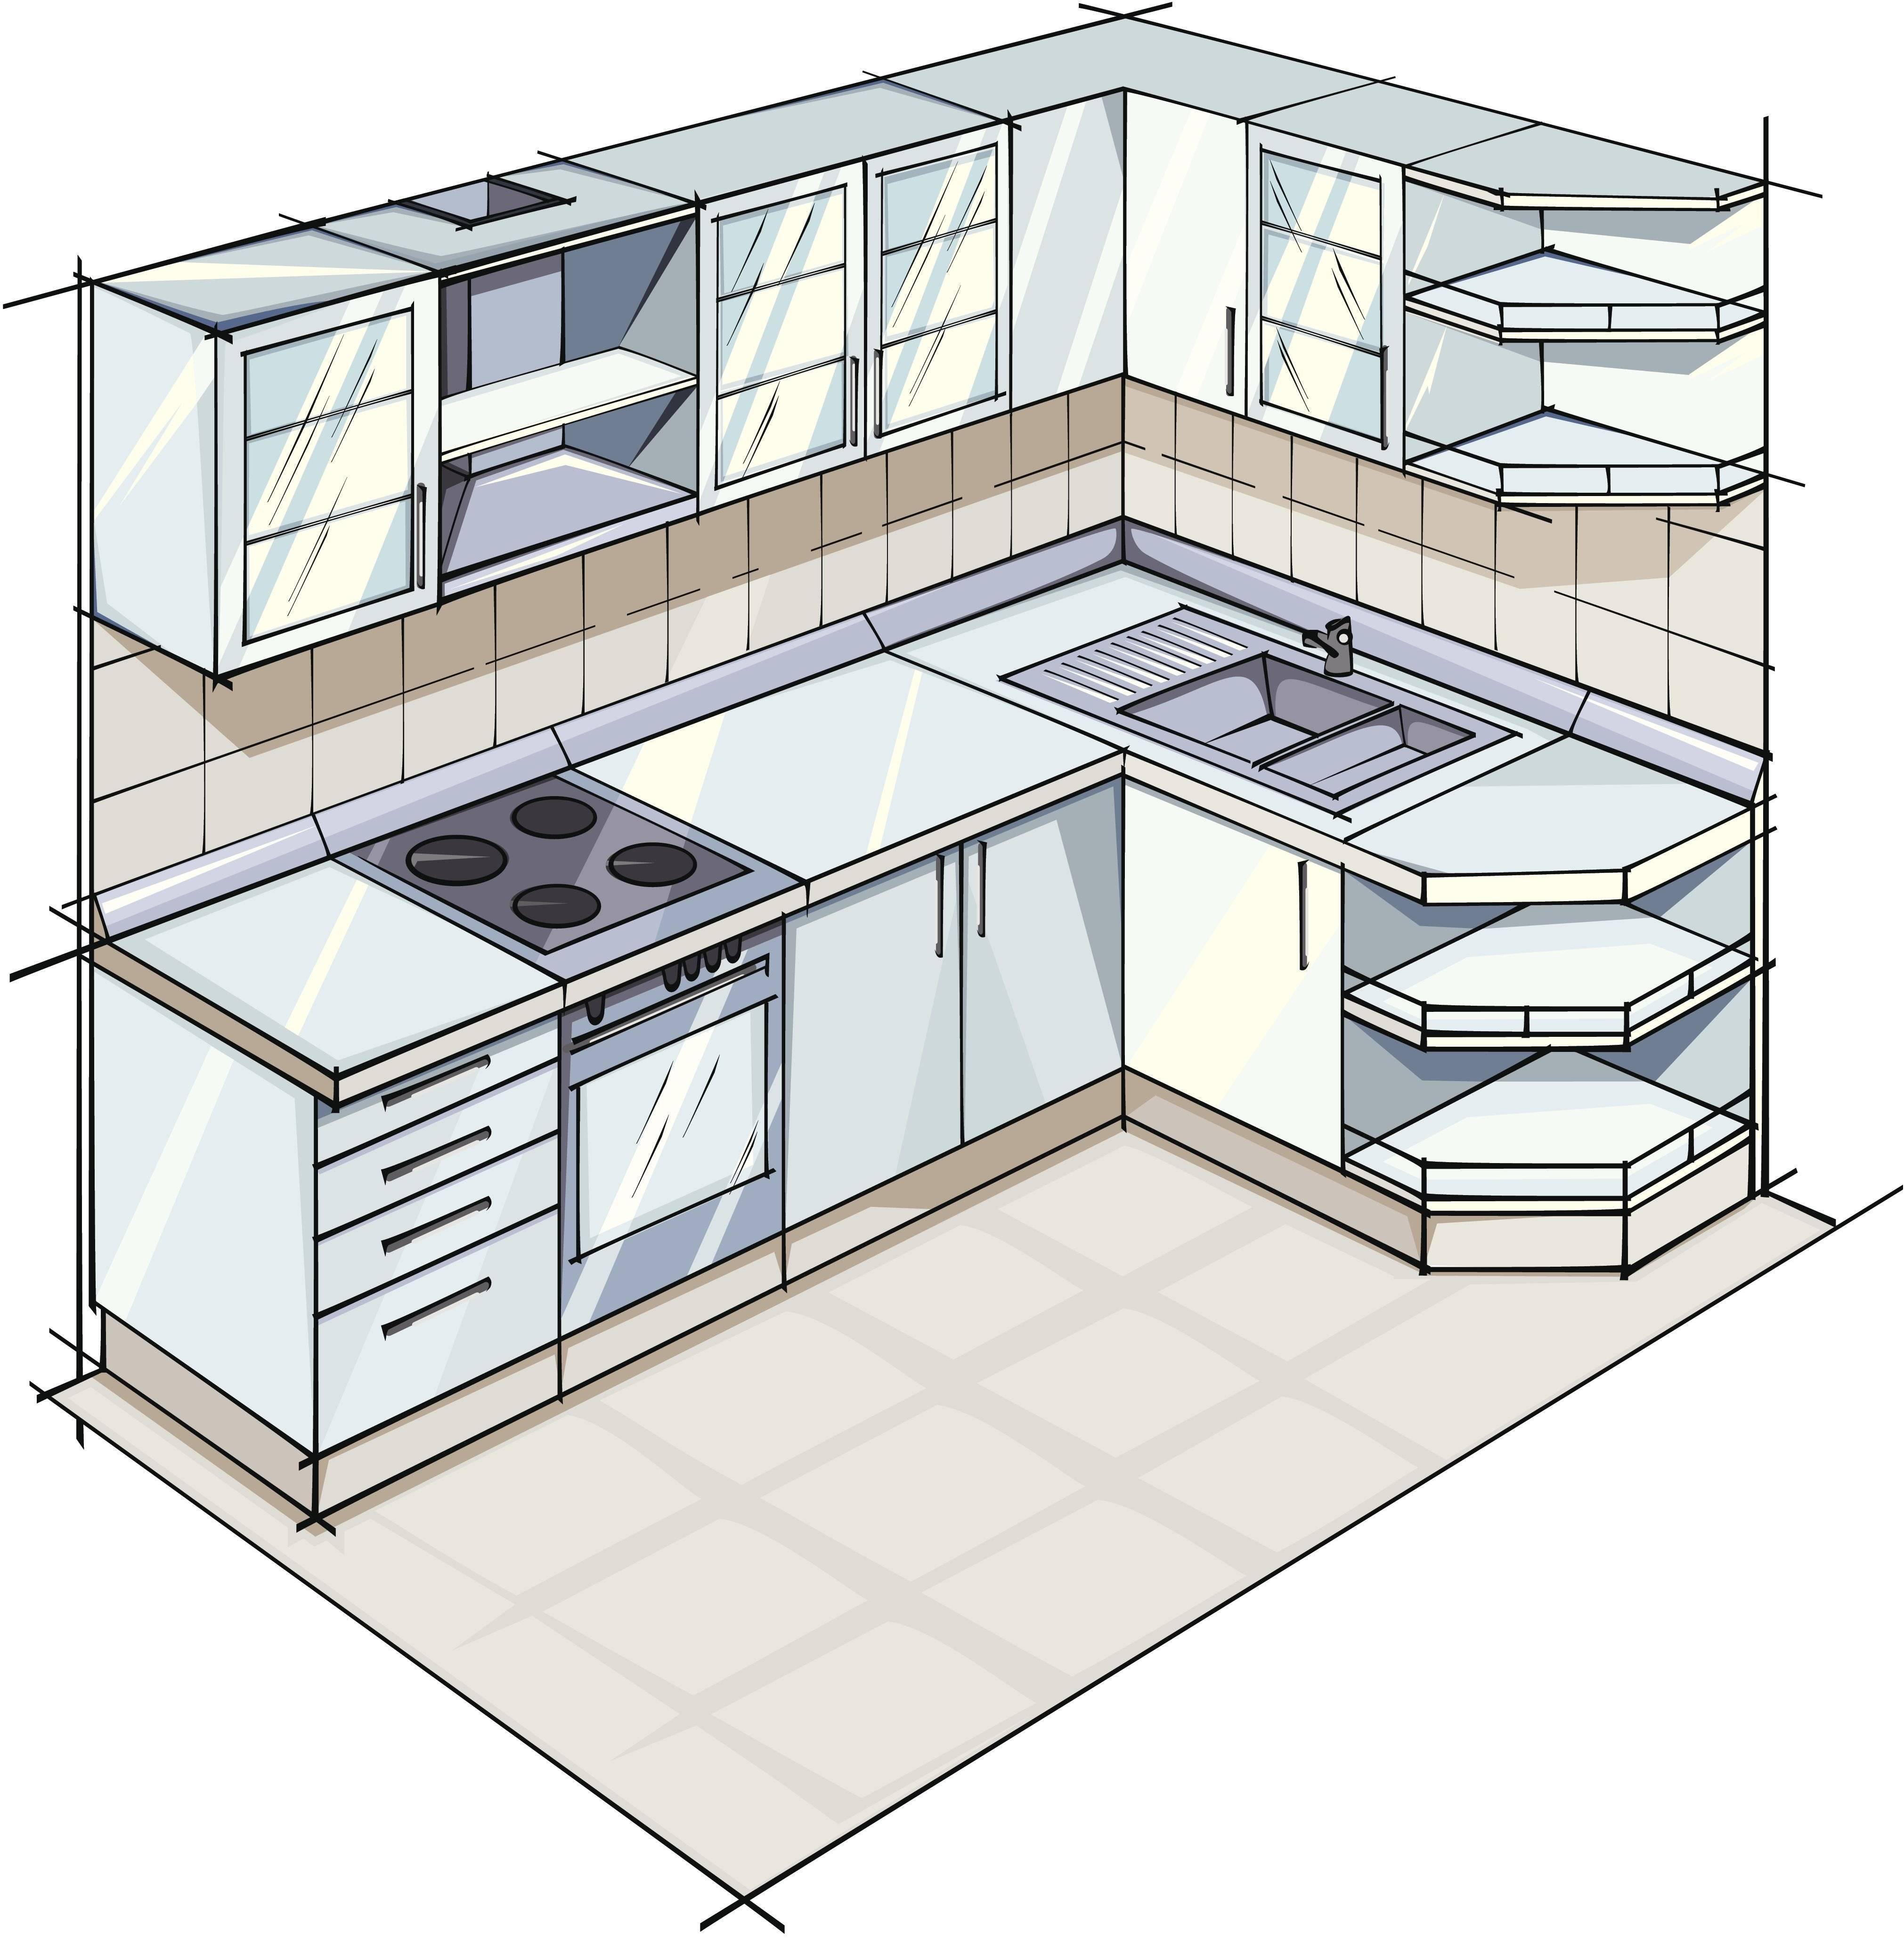 Кухня-столовая - планировка комнаты и деление на зоны. классические и современные стили для кухни-столовой. достоинства и недостатки (фото + видео)